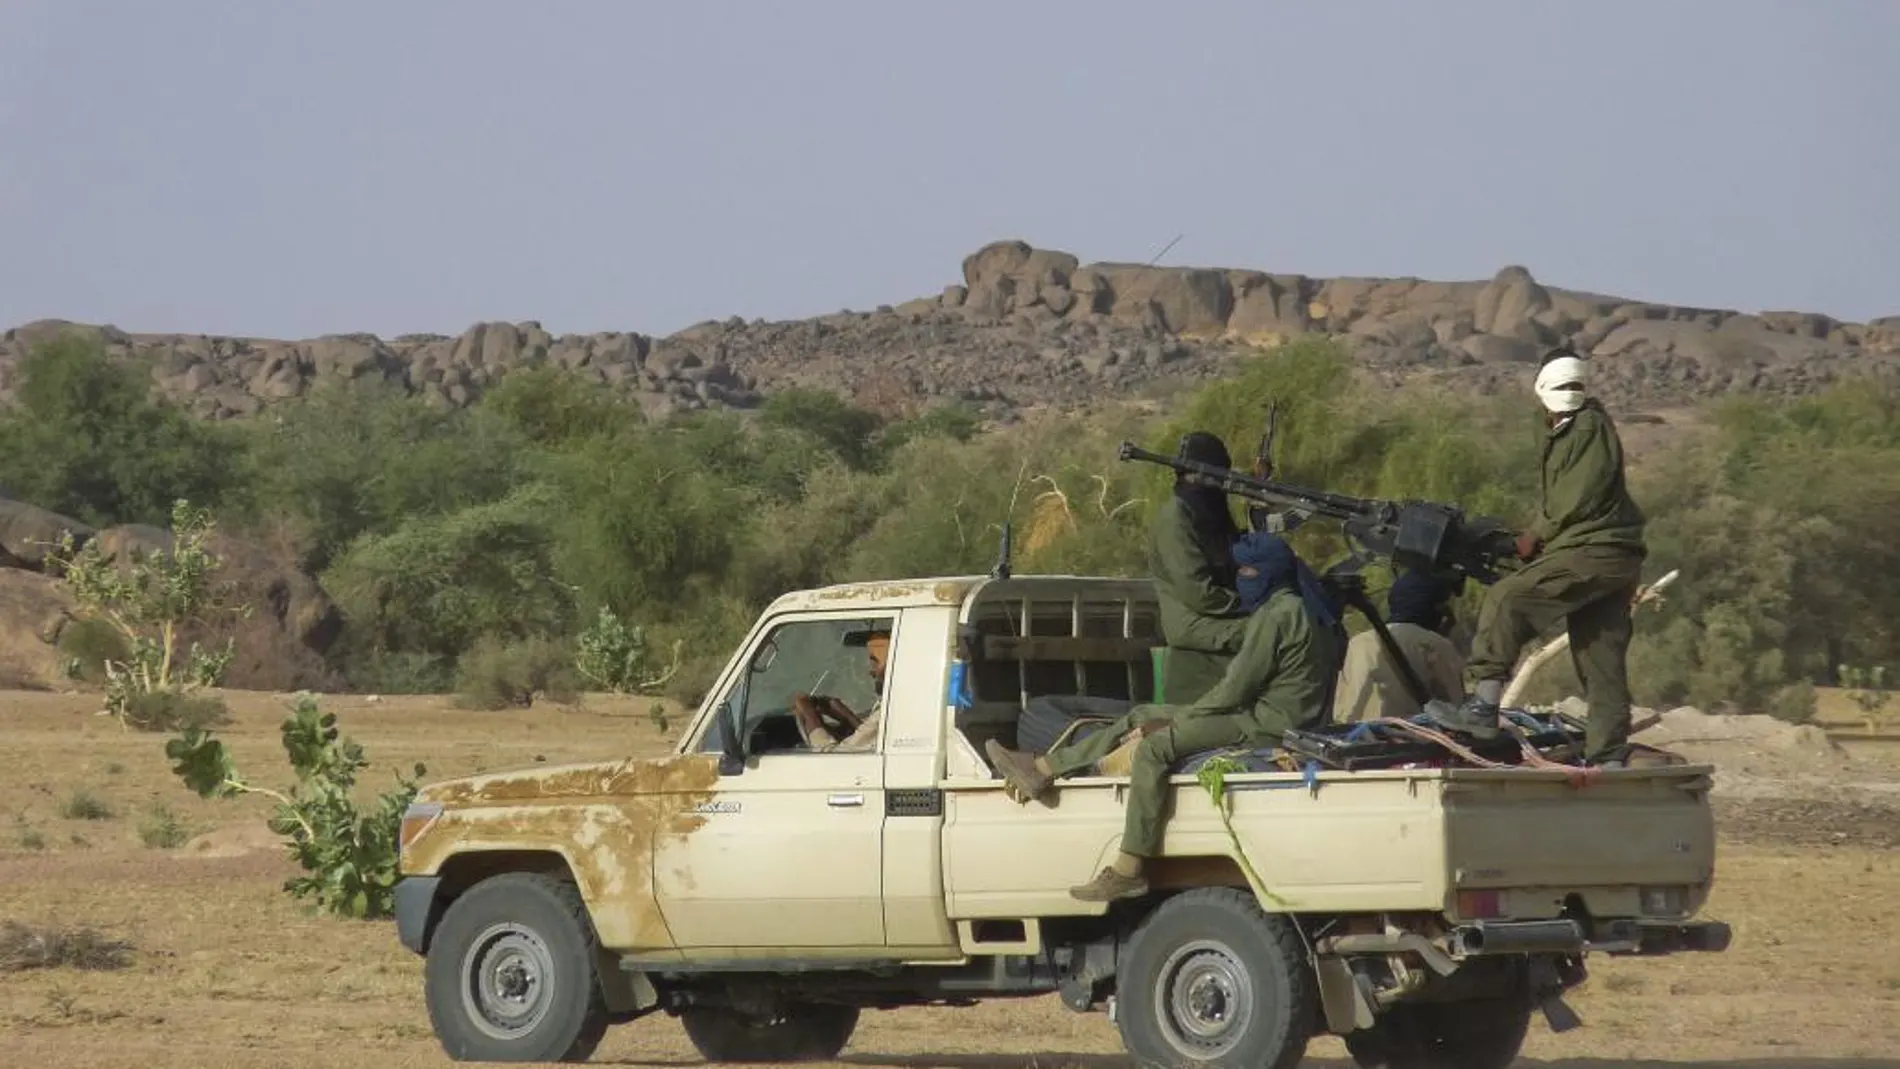 Un grupo de desconocidos armados habría secuestrado a la cooperante en la región de Gao, en el norte de Mali